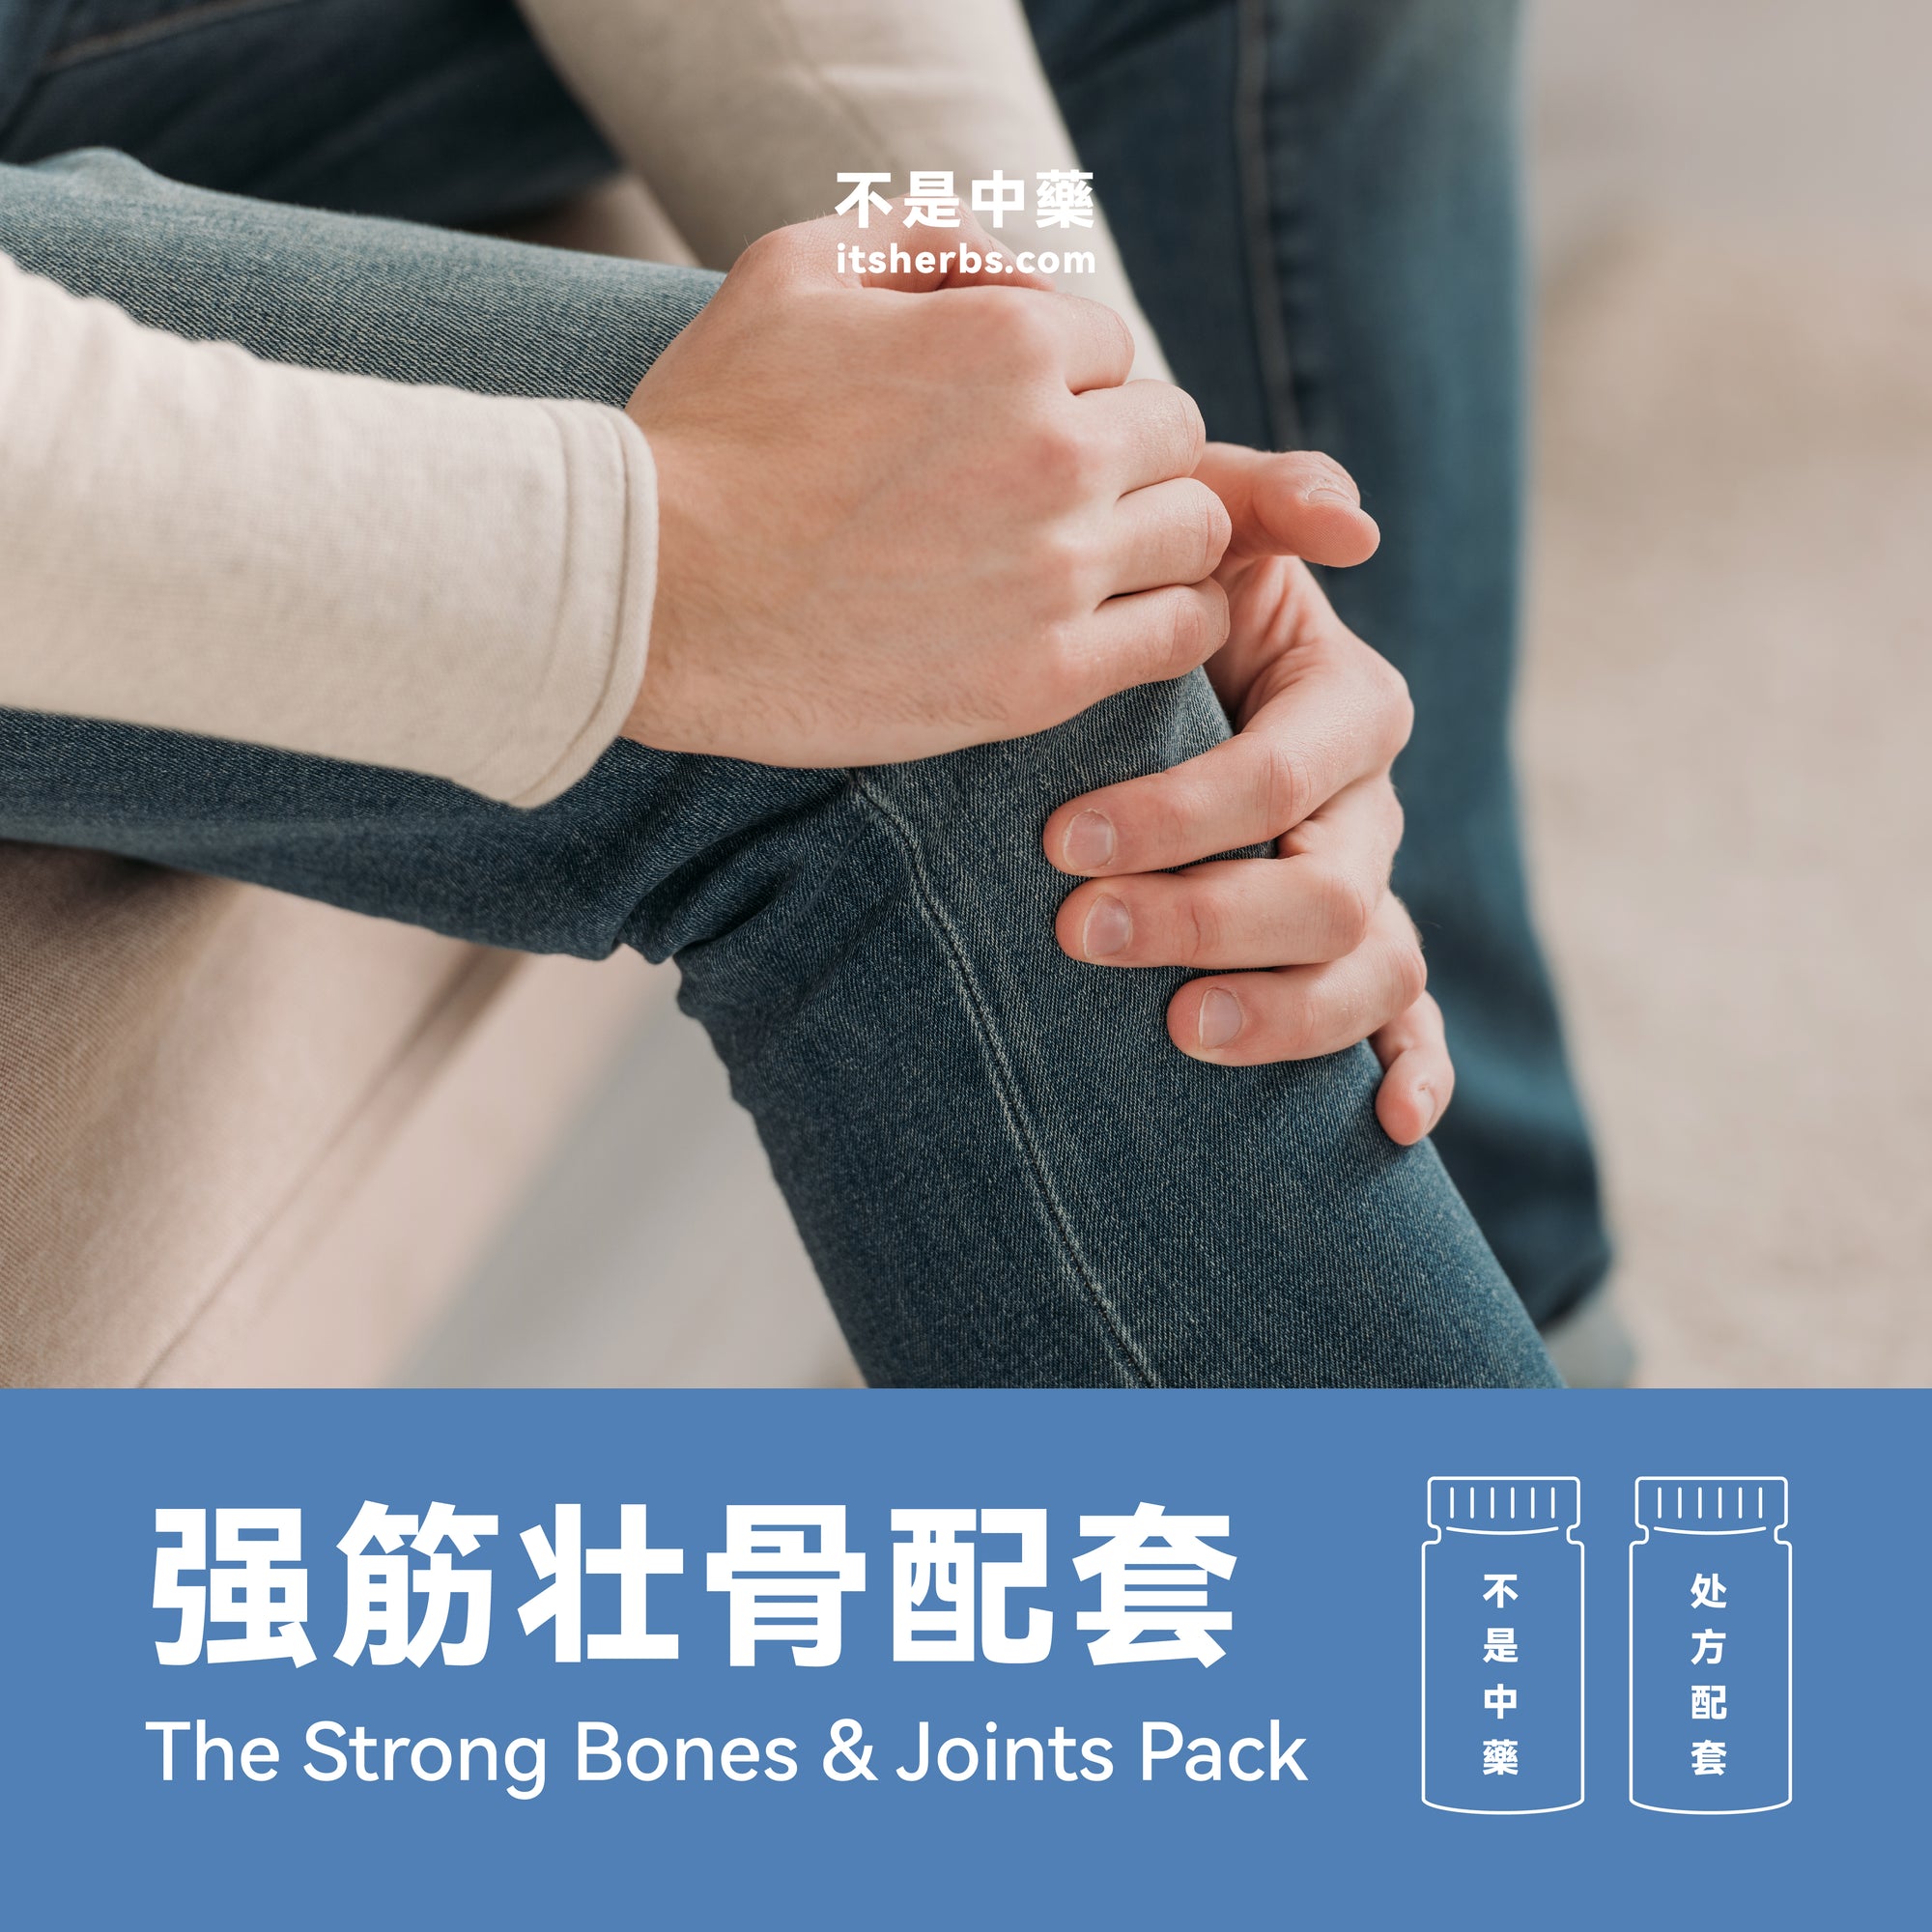 强筋壮骨配套 The Strong Bones & Joints Pack